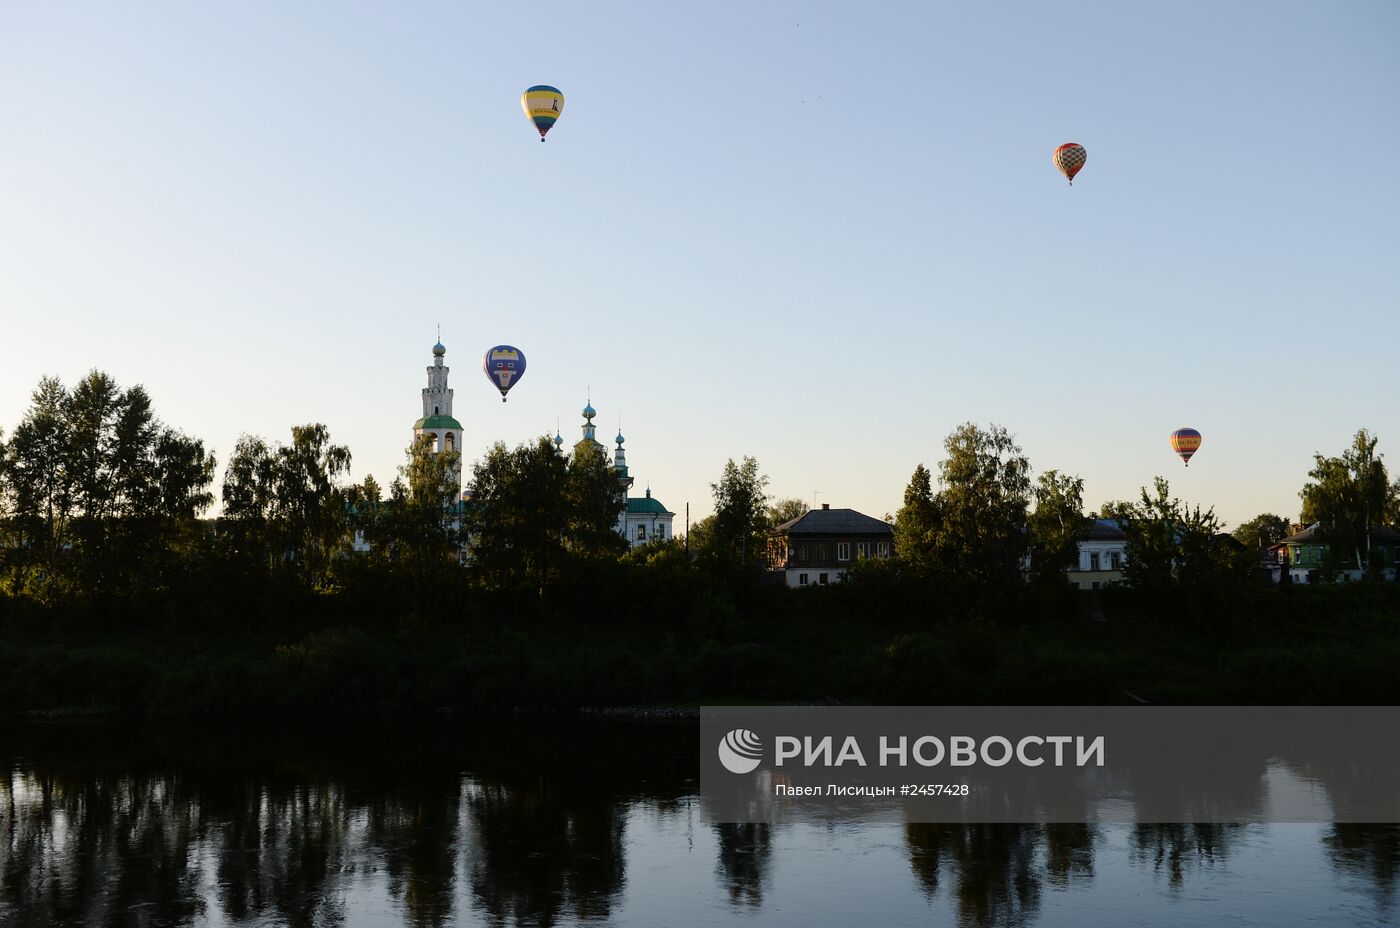 Фестиваль воздухоплавателей "Небесная ярмарка" в Пермском крае